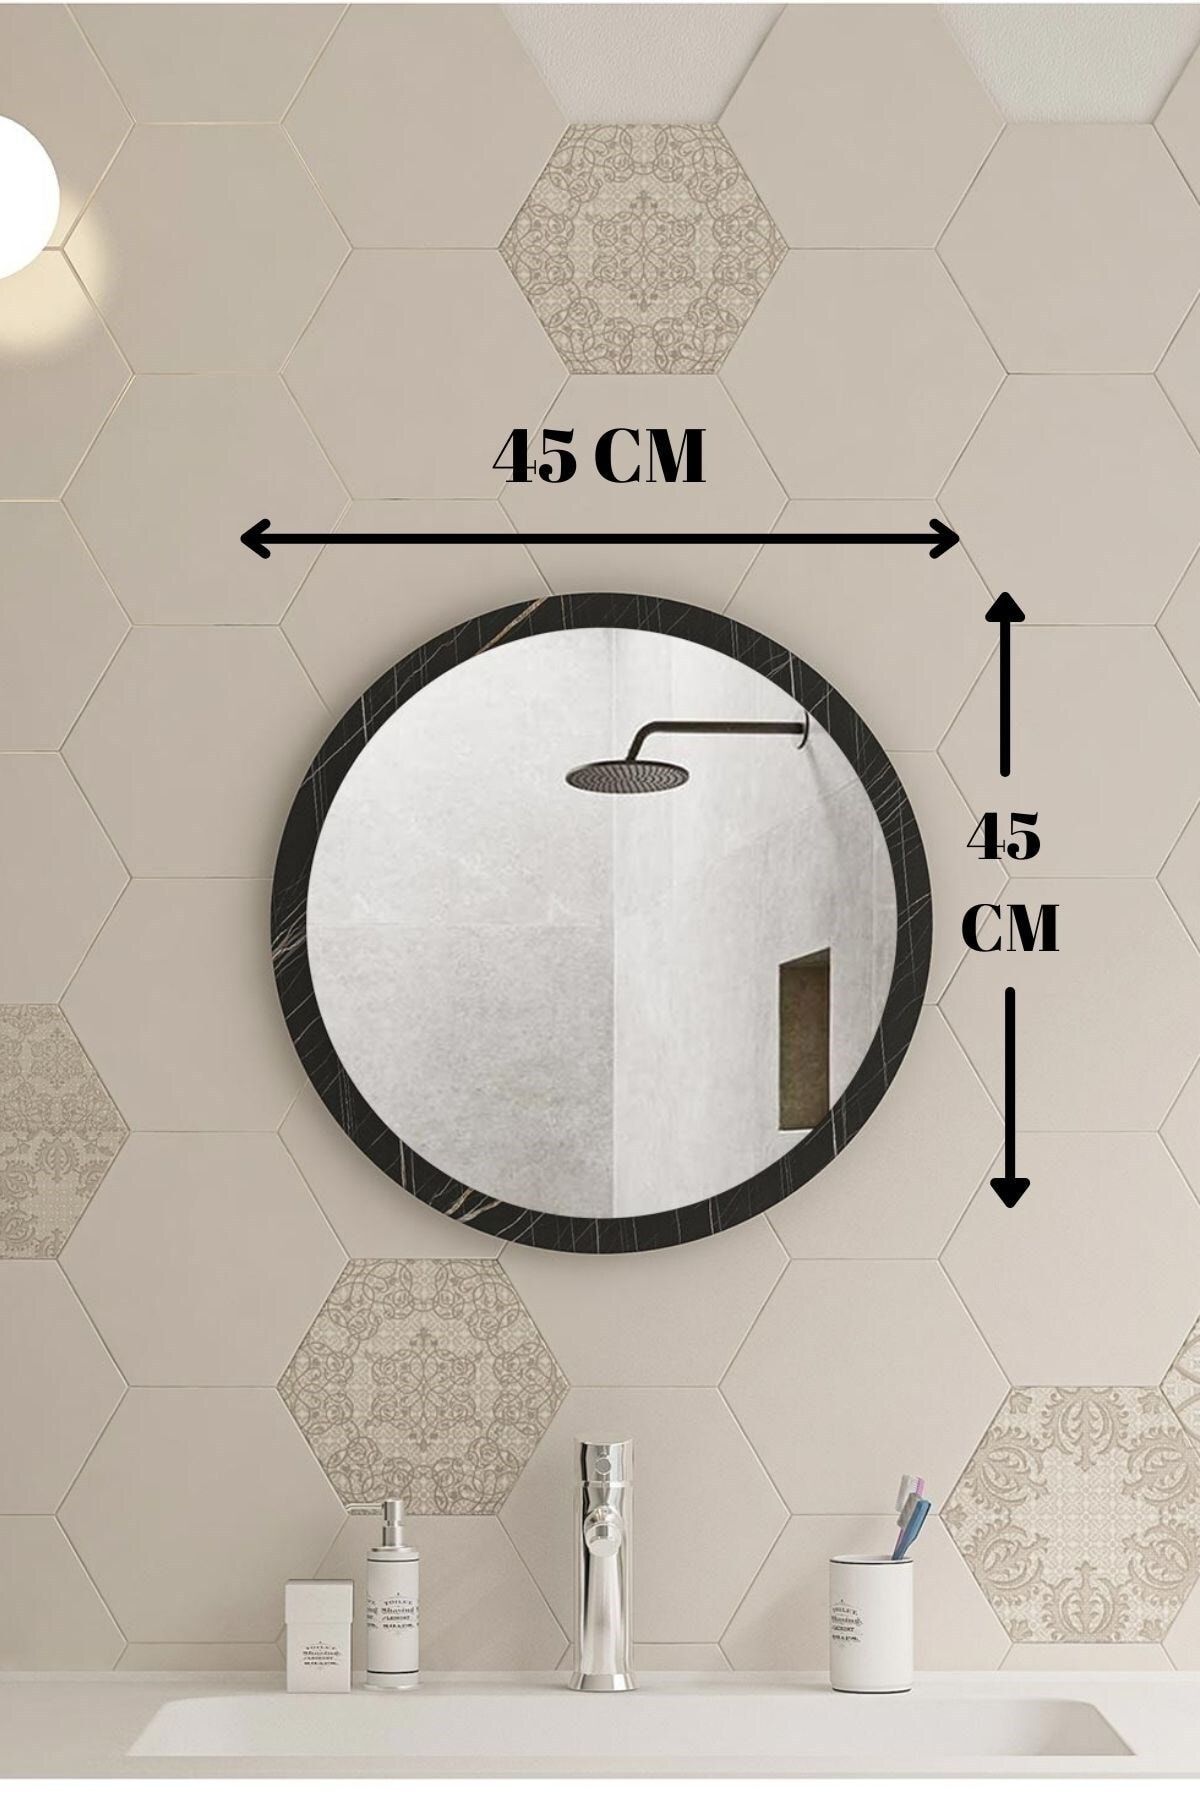 Resmo Rio Sonata 45cm Banyo Aynası Wc Antre Dresuar Konsol Duvar Salon  Mutfak Çocuk Yatak Odası Fiyatı, Yorumları - Trendyol